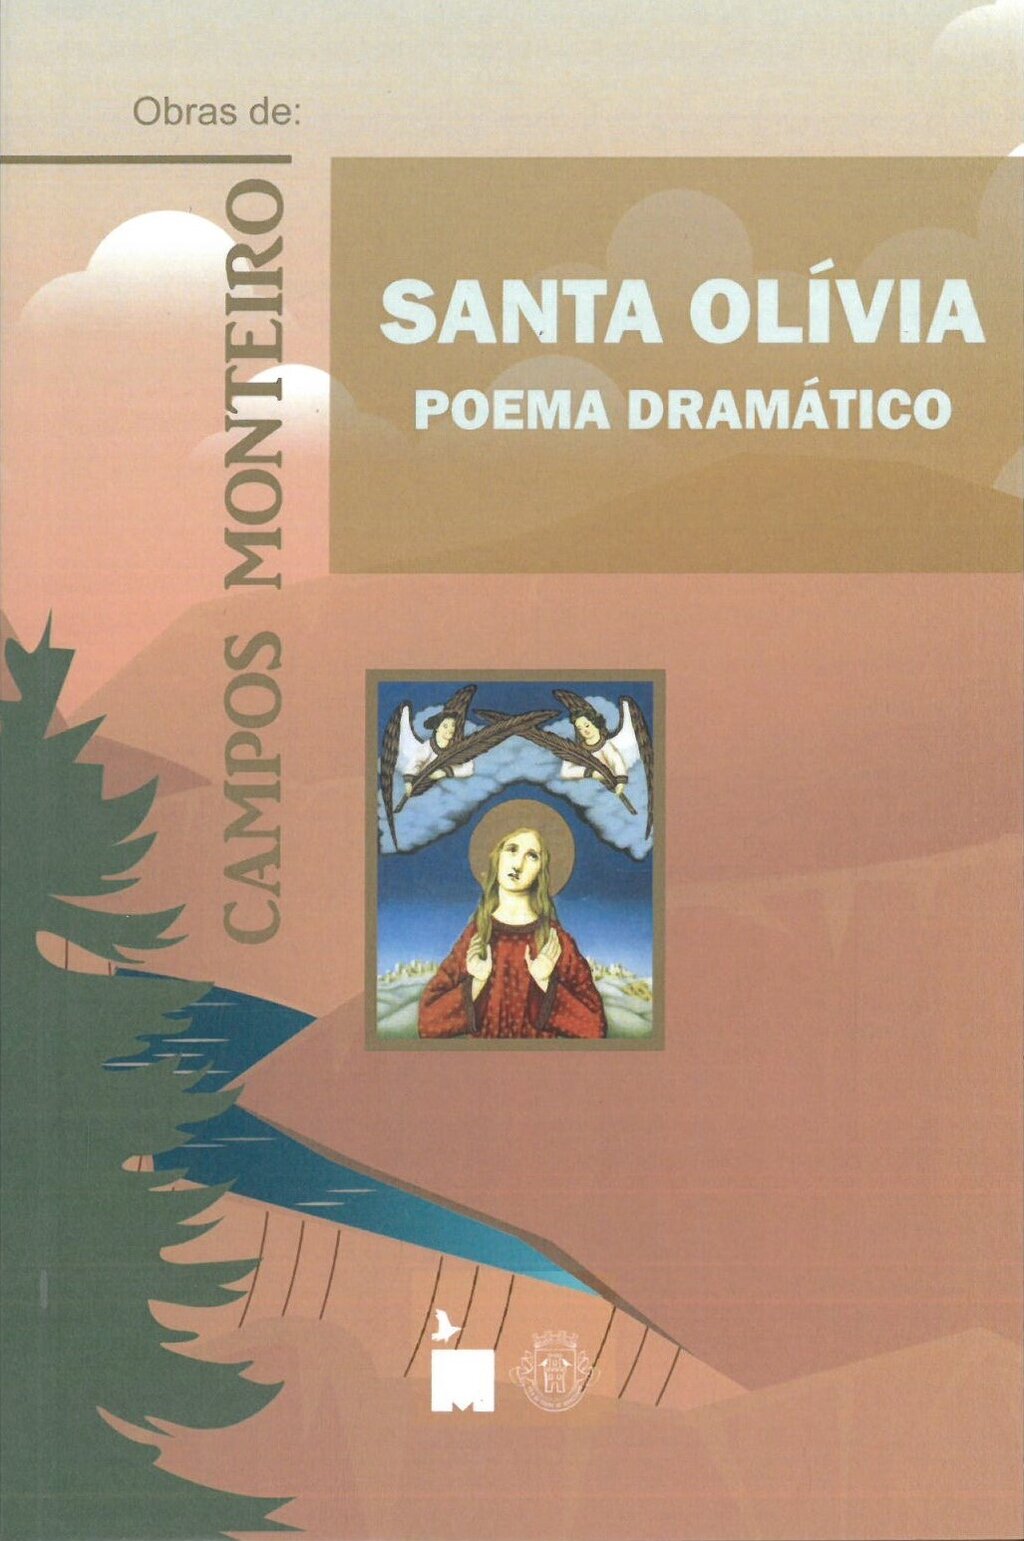 Apresentação do Livro “Santa Olívia” de Campos Monteiro